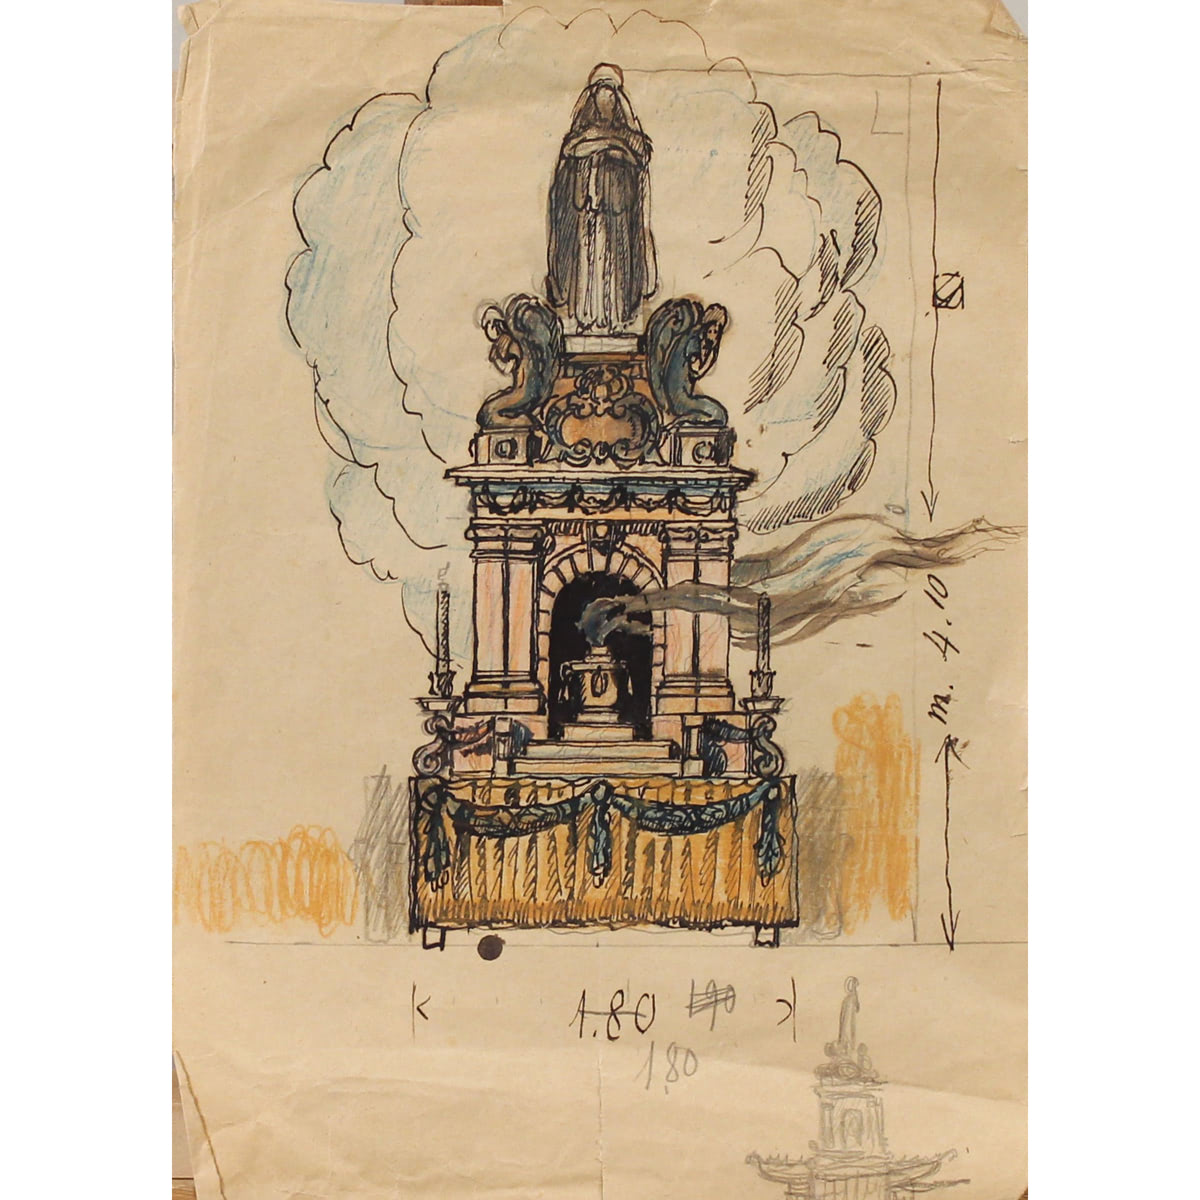 Bozzetto di carro votivo - Sketch of a votive chariot